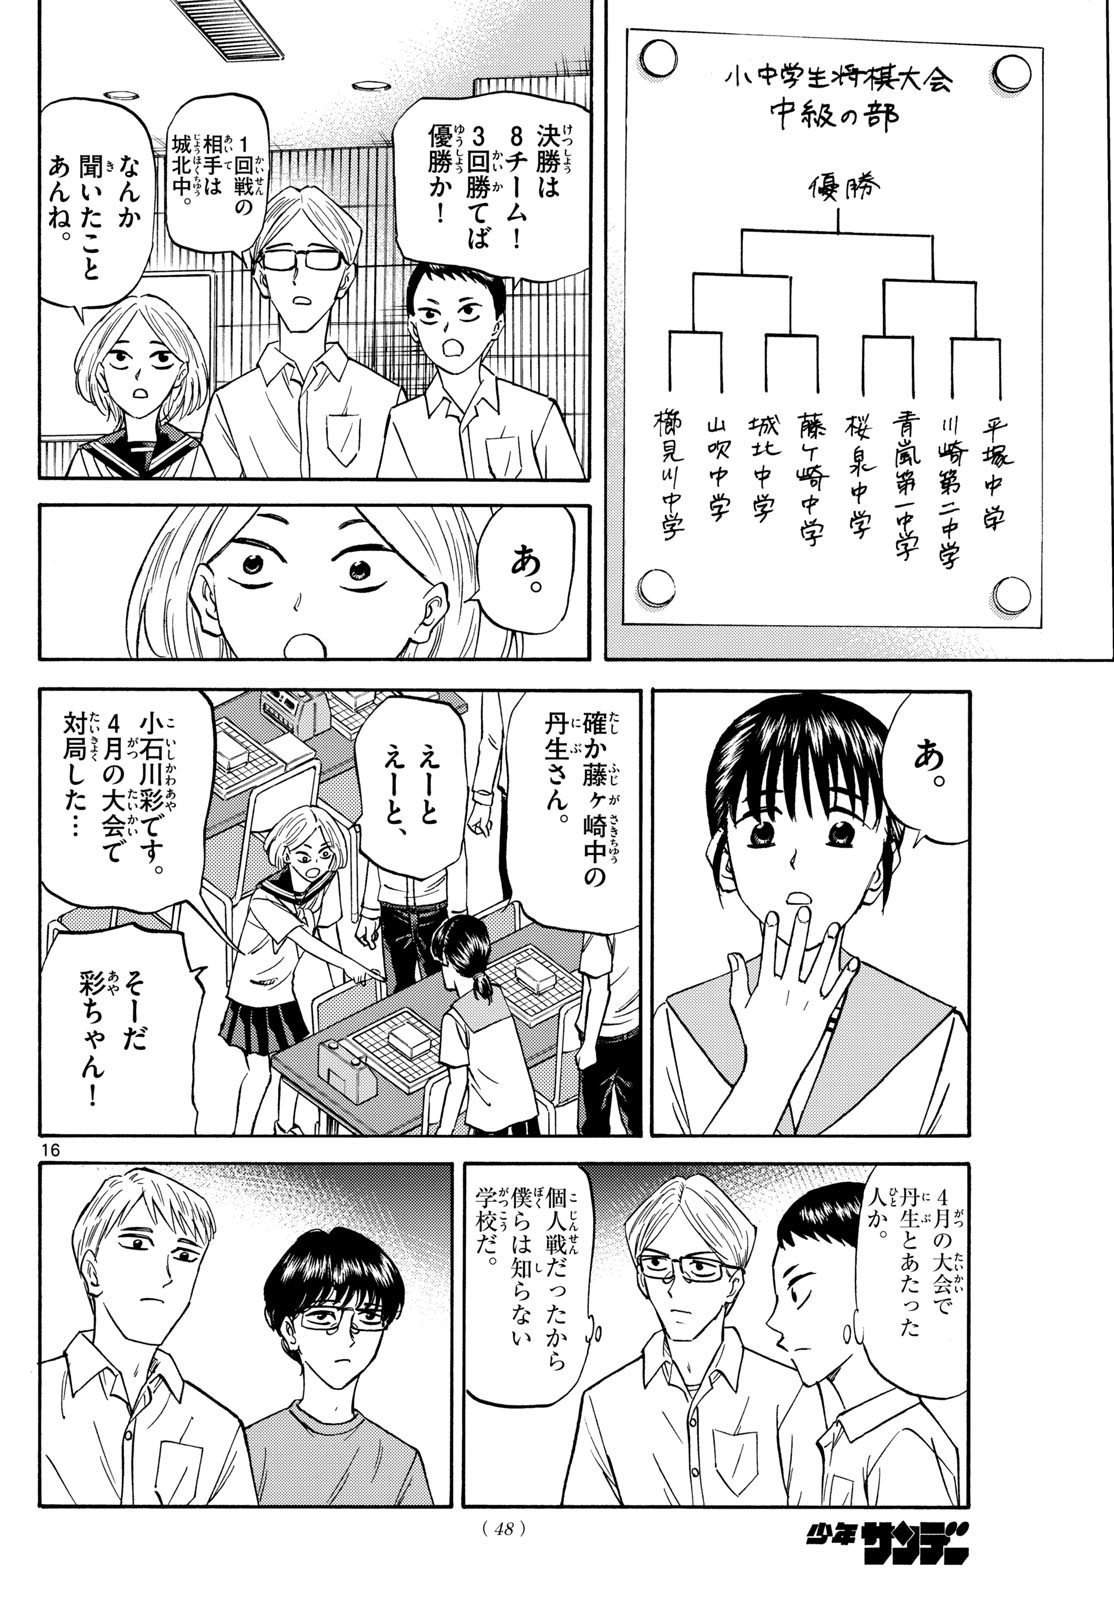 Ryu-to-Ichigo - Chapter 151 - Page 16